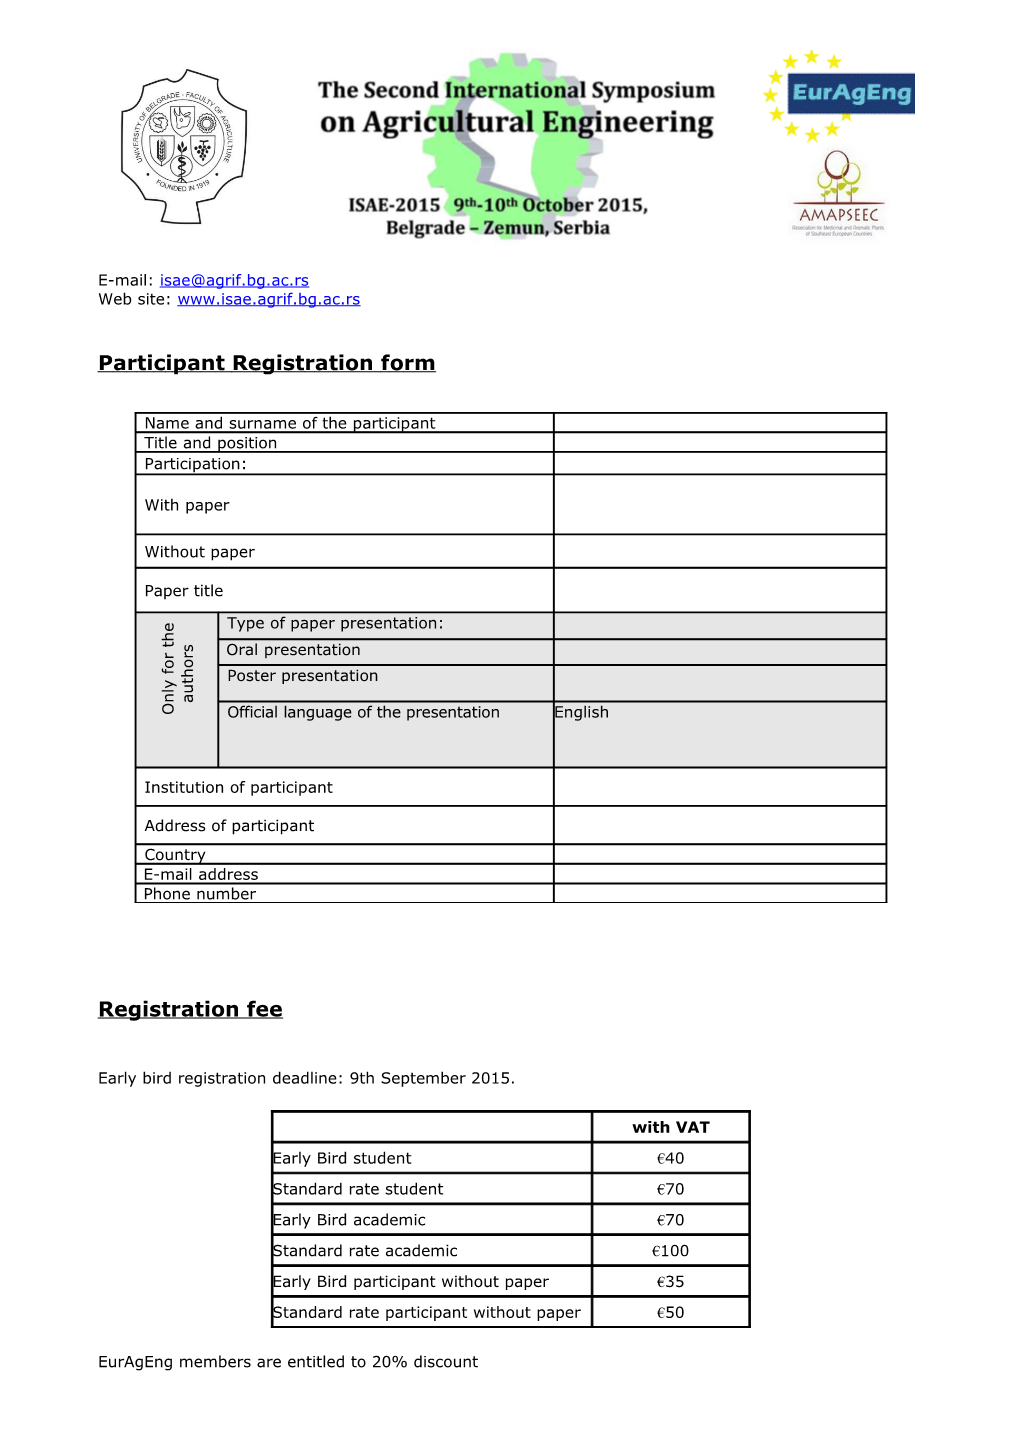 Participant Registration Form